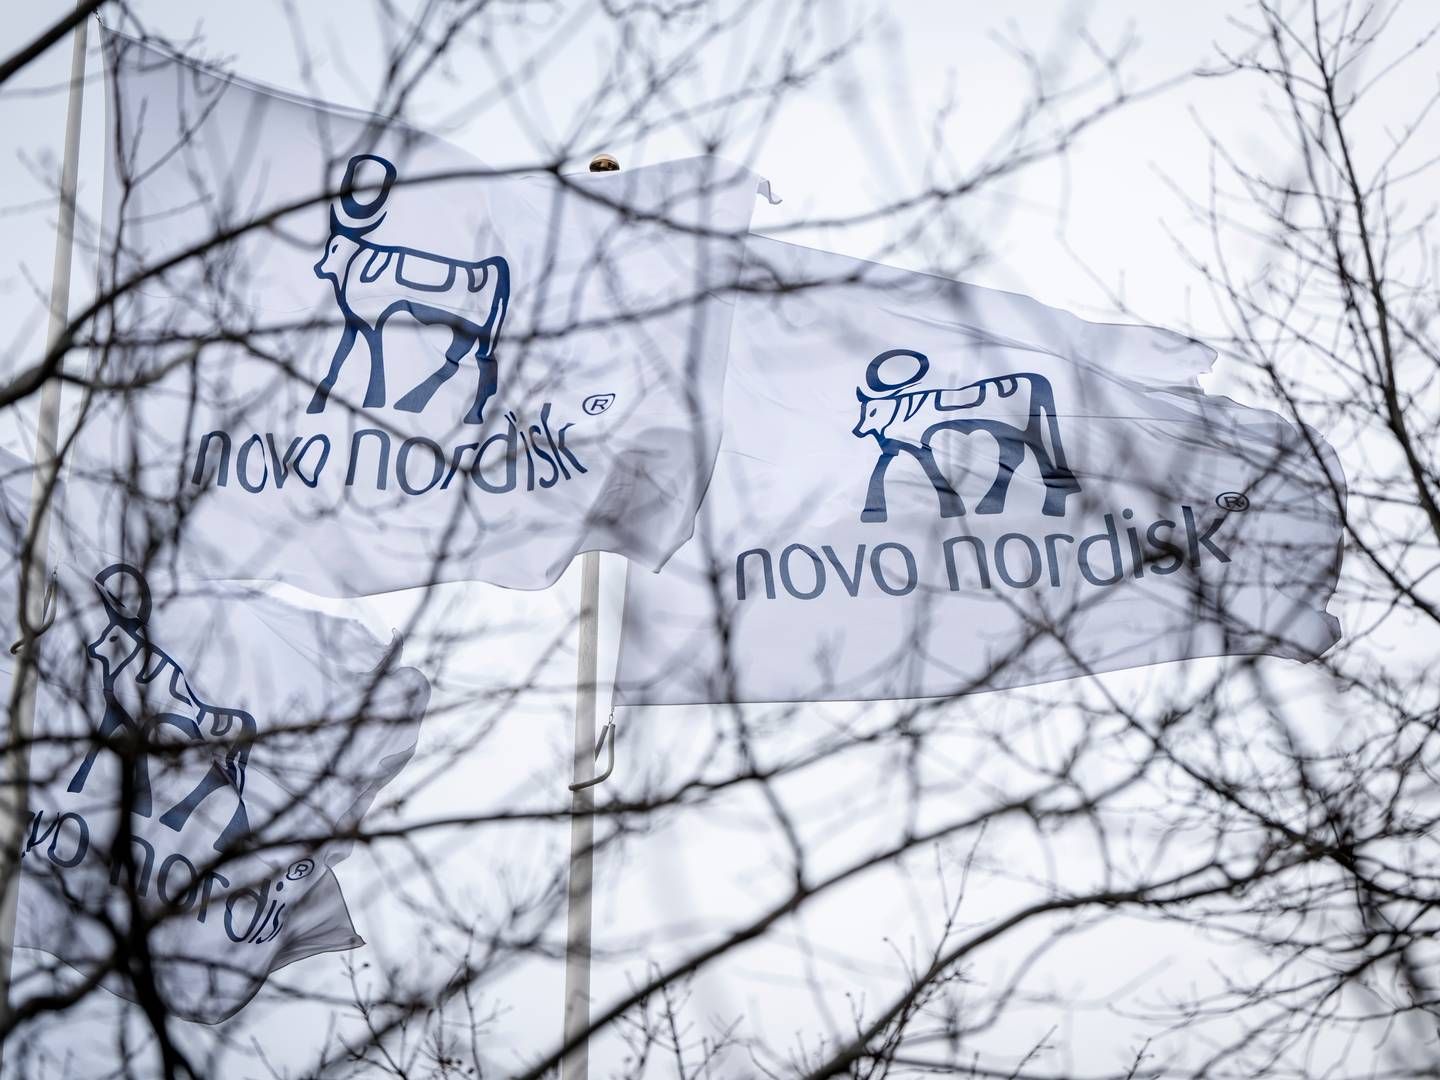 Novo Nordisk agter at betale 11 mia. dollar svarende til mere end 76 mia. kr. for tre fabrikker. | Foto: Mads Claus Rasmussen